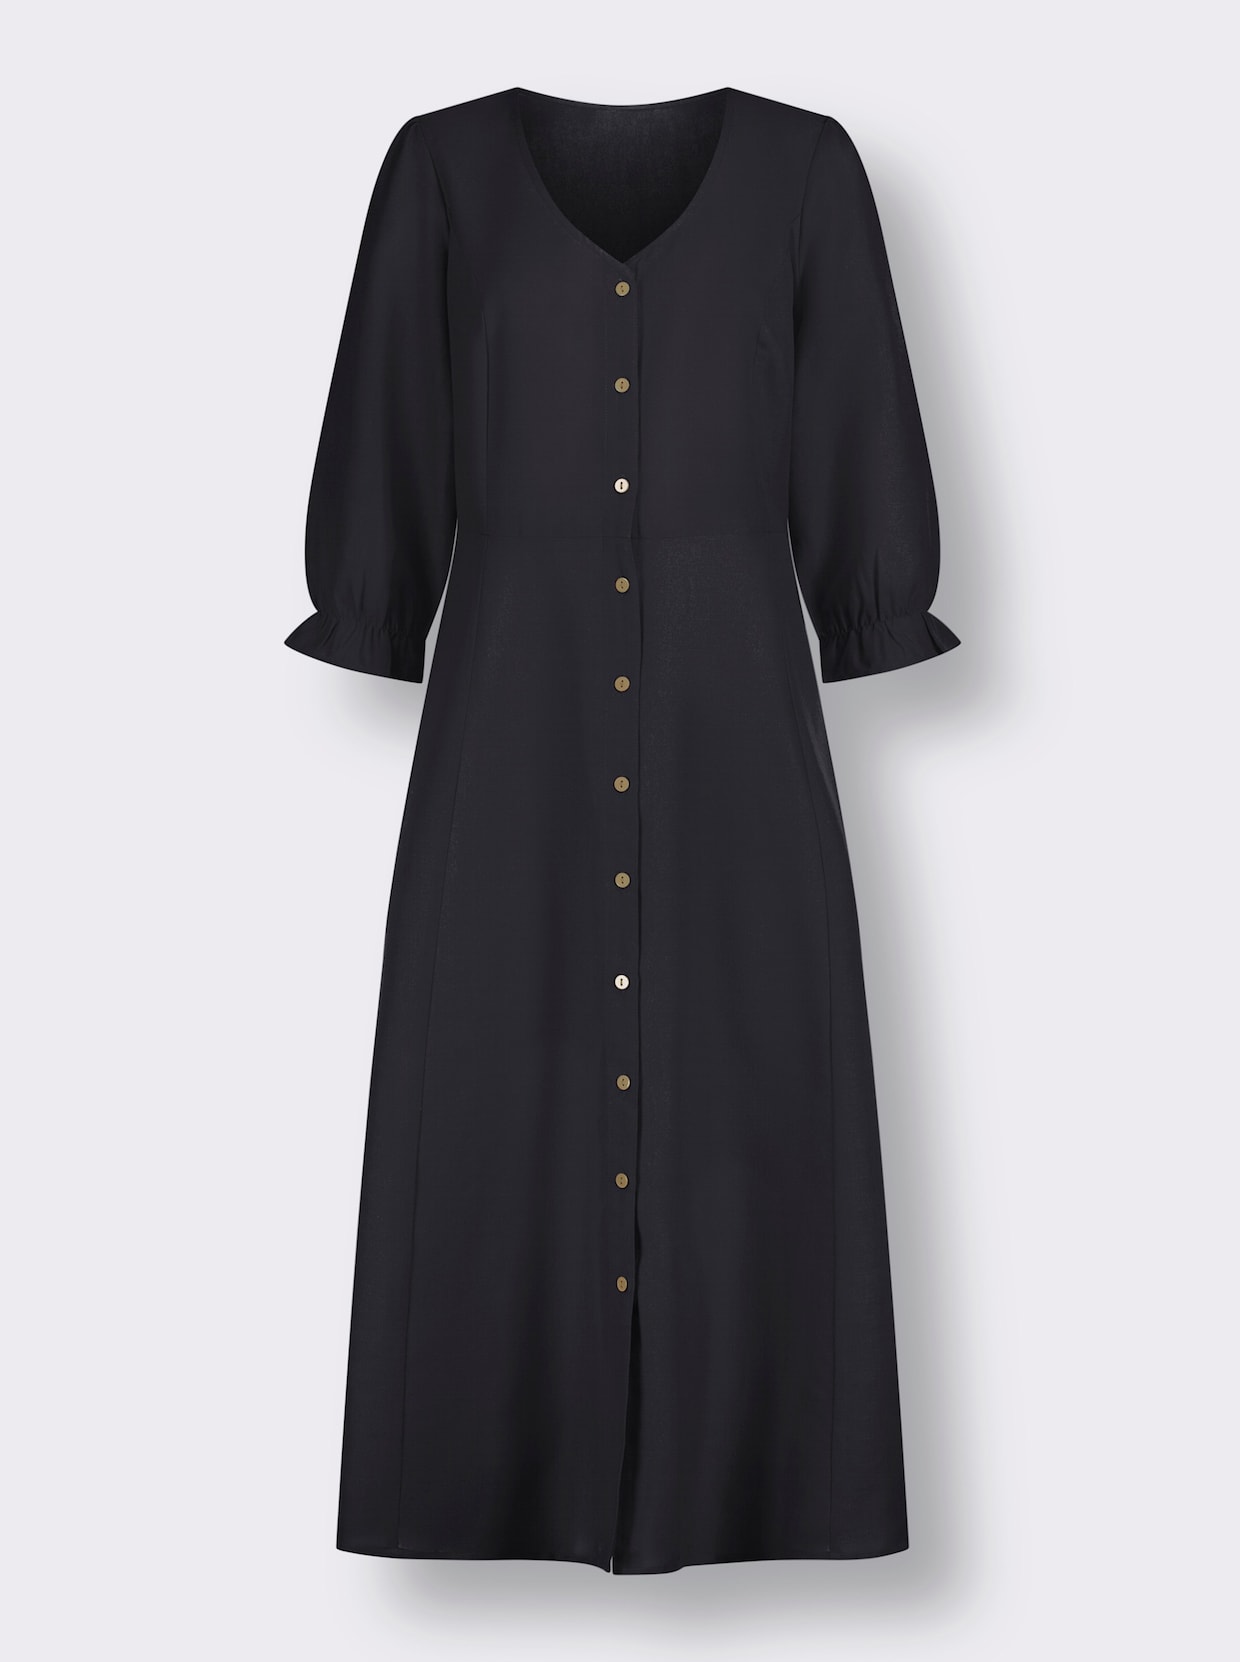 jurk in klederdrachtstijl - zwart